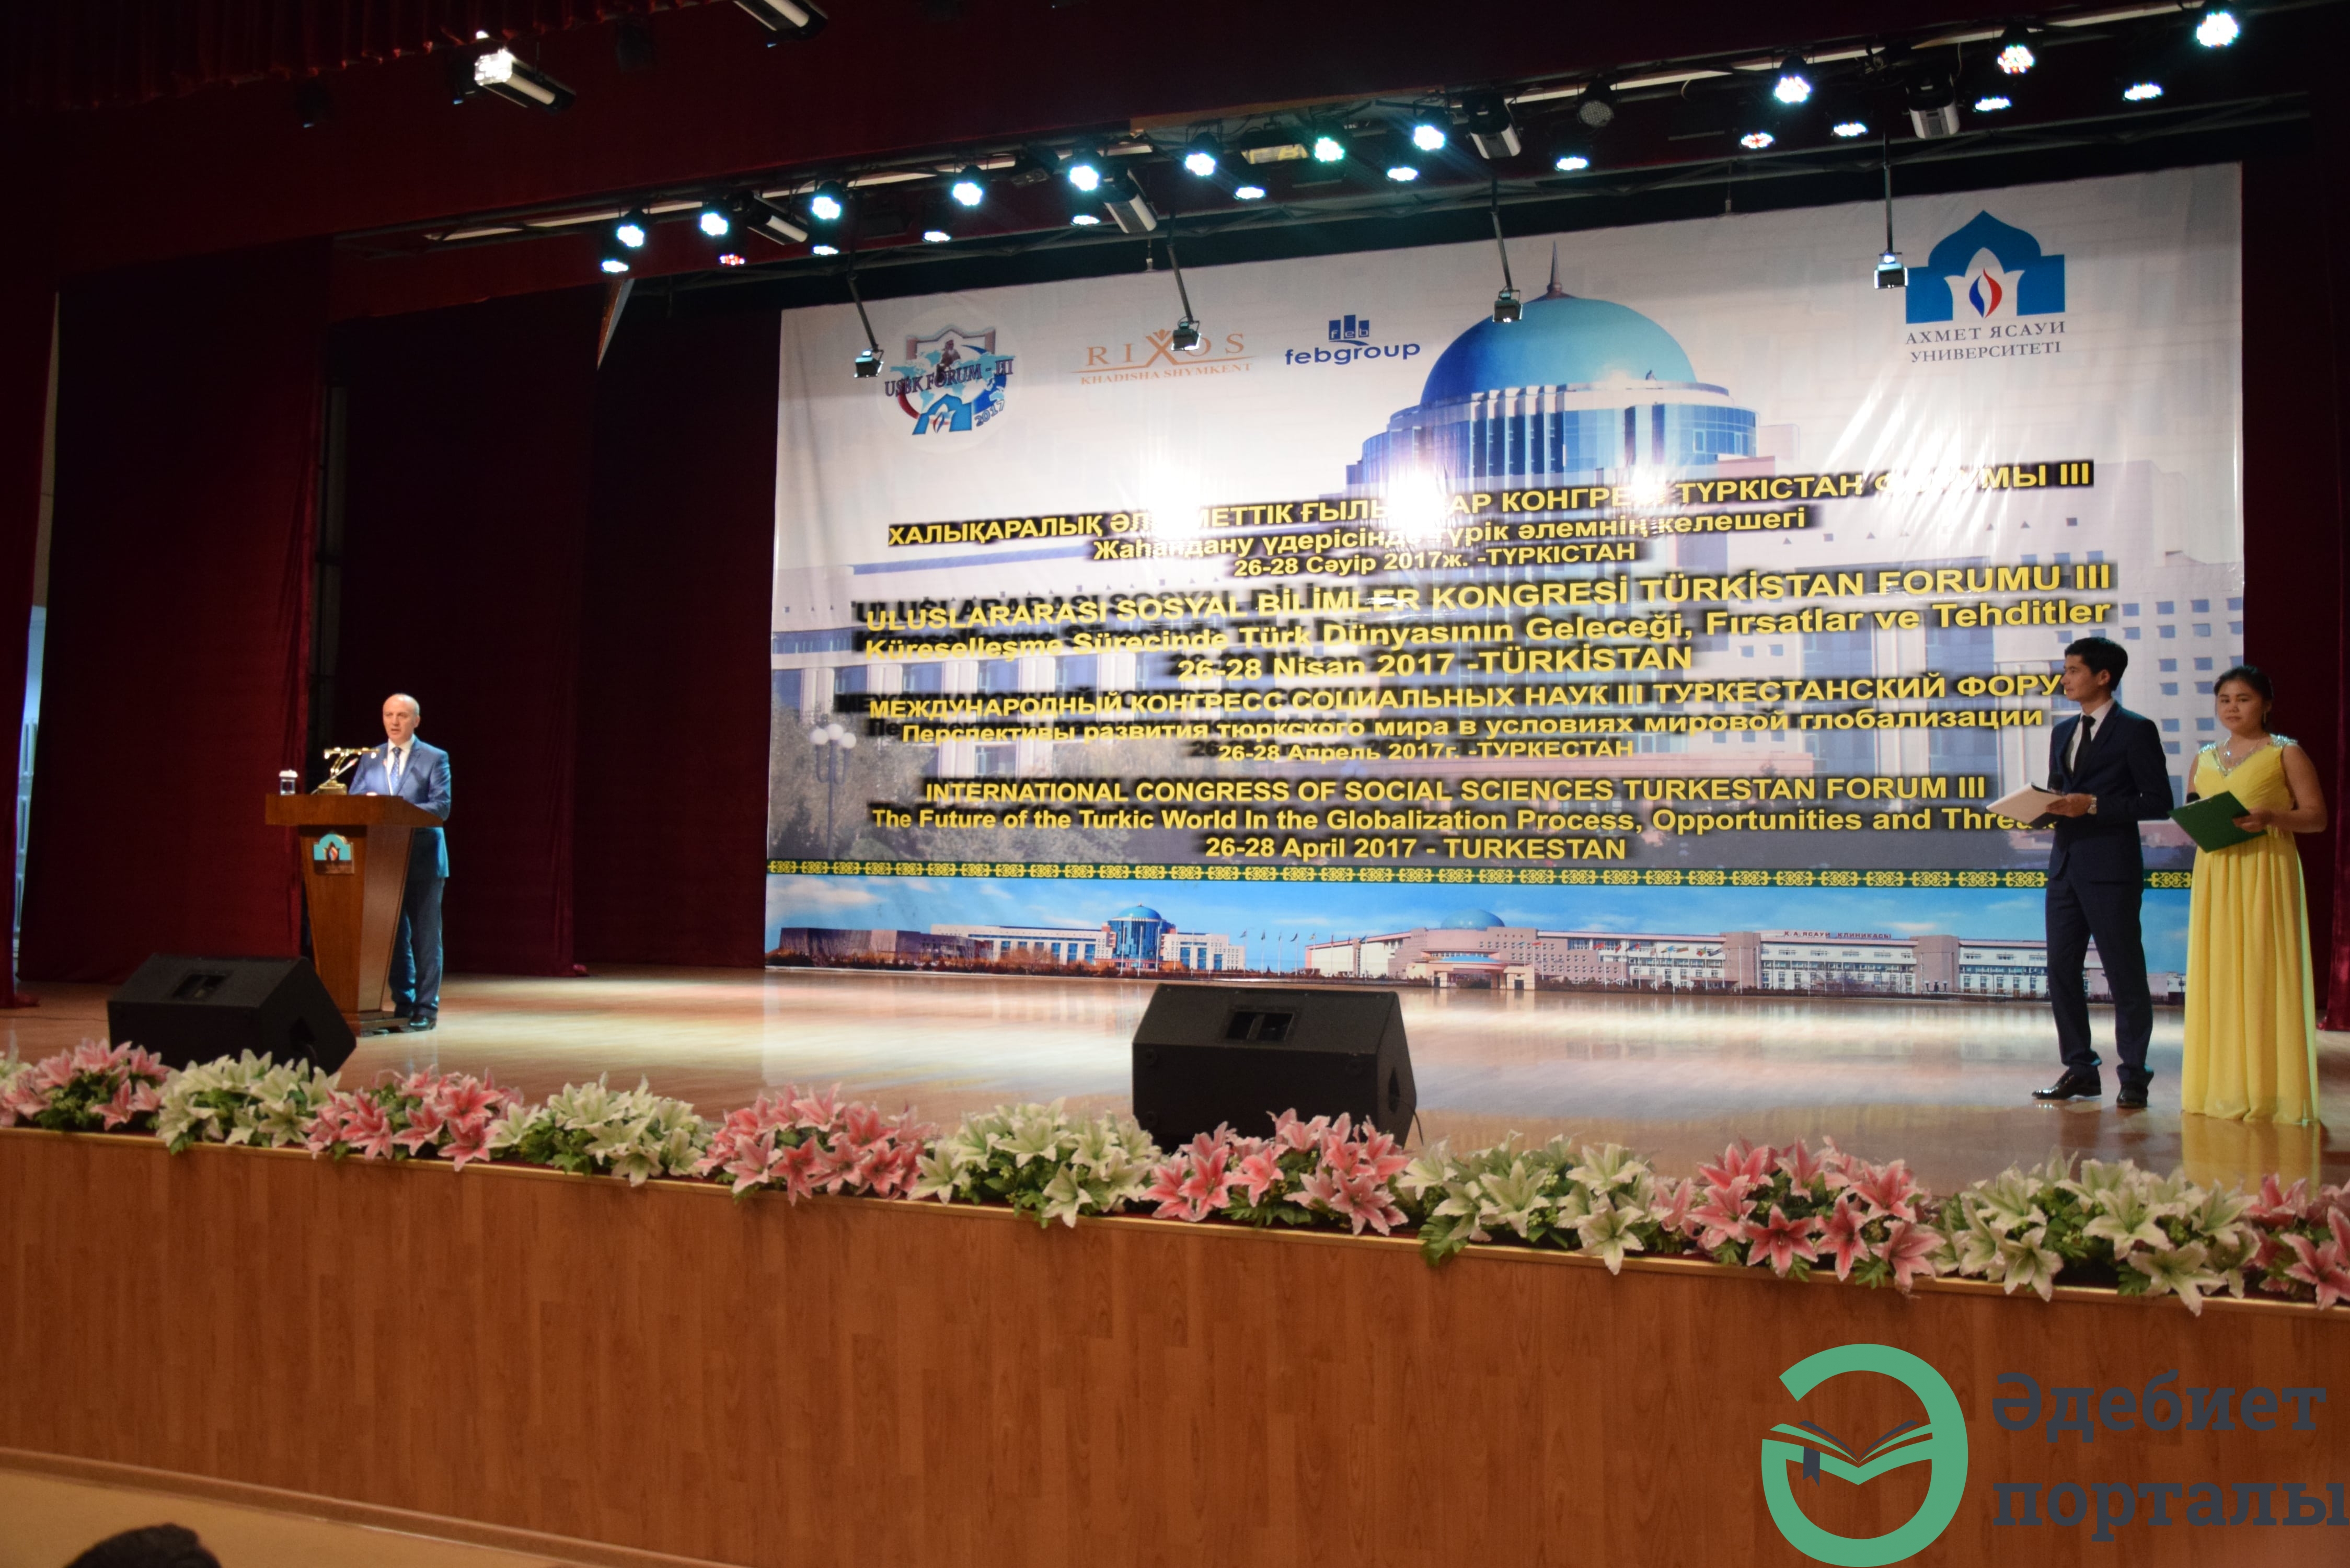 Халықаралық әлеуметтік ғылымдар конгресі: ІІІ Түркістан форумы  - фото 14 - adebiportal.kz